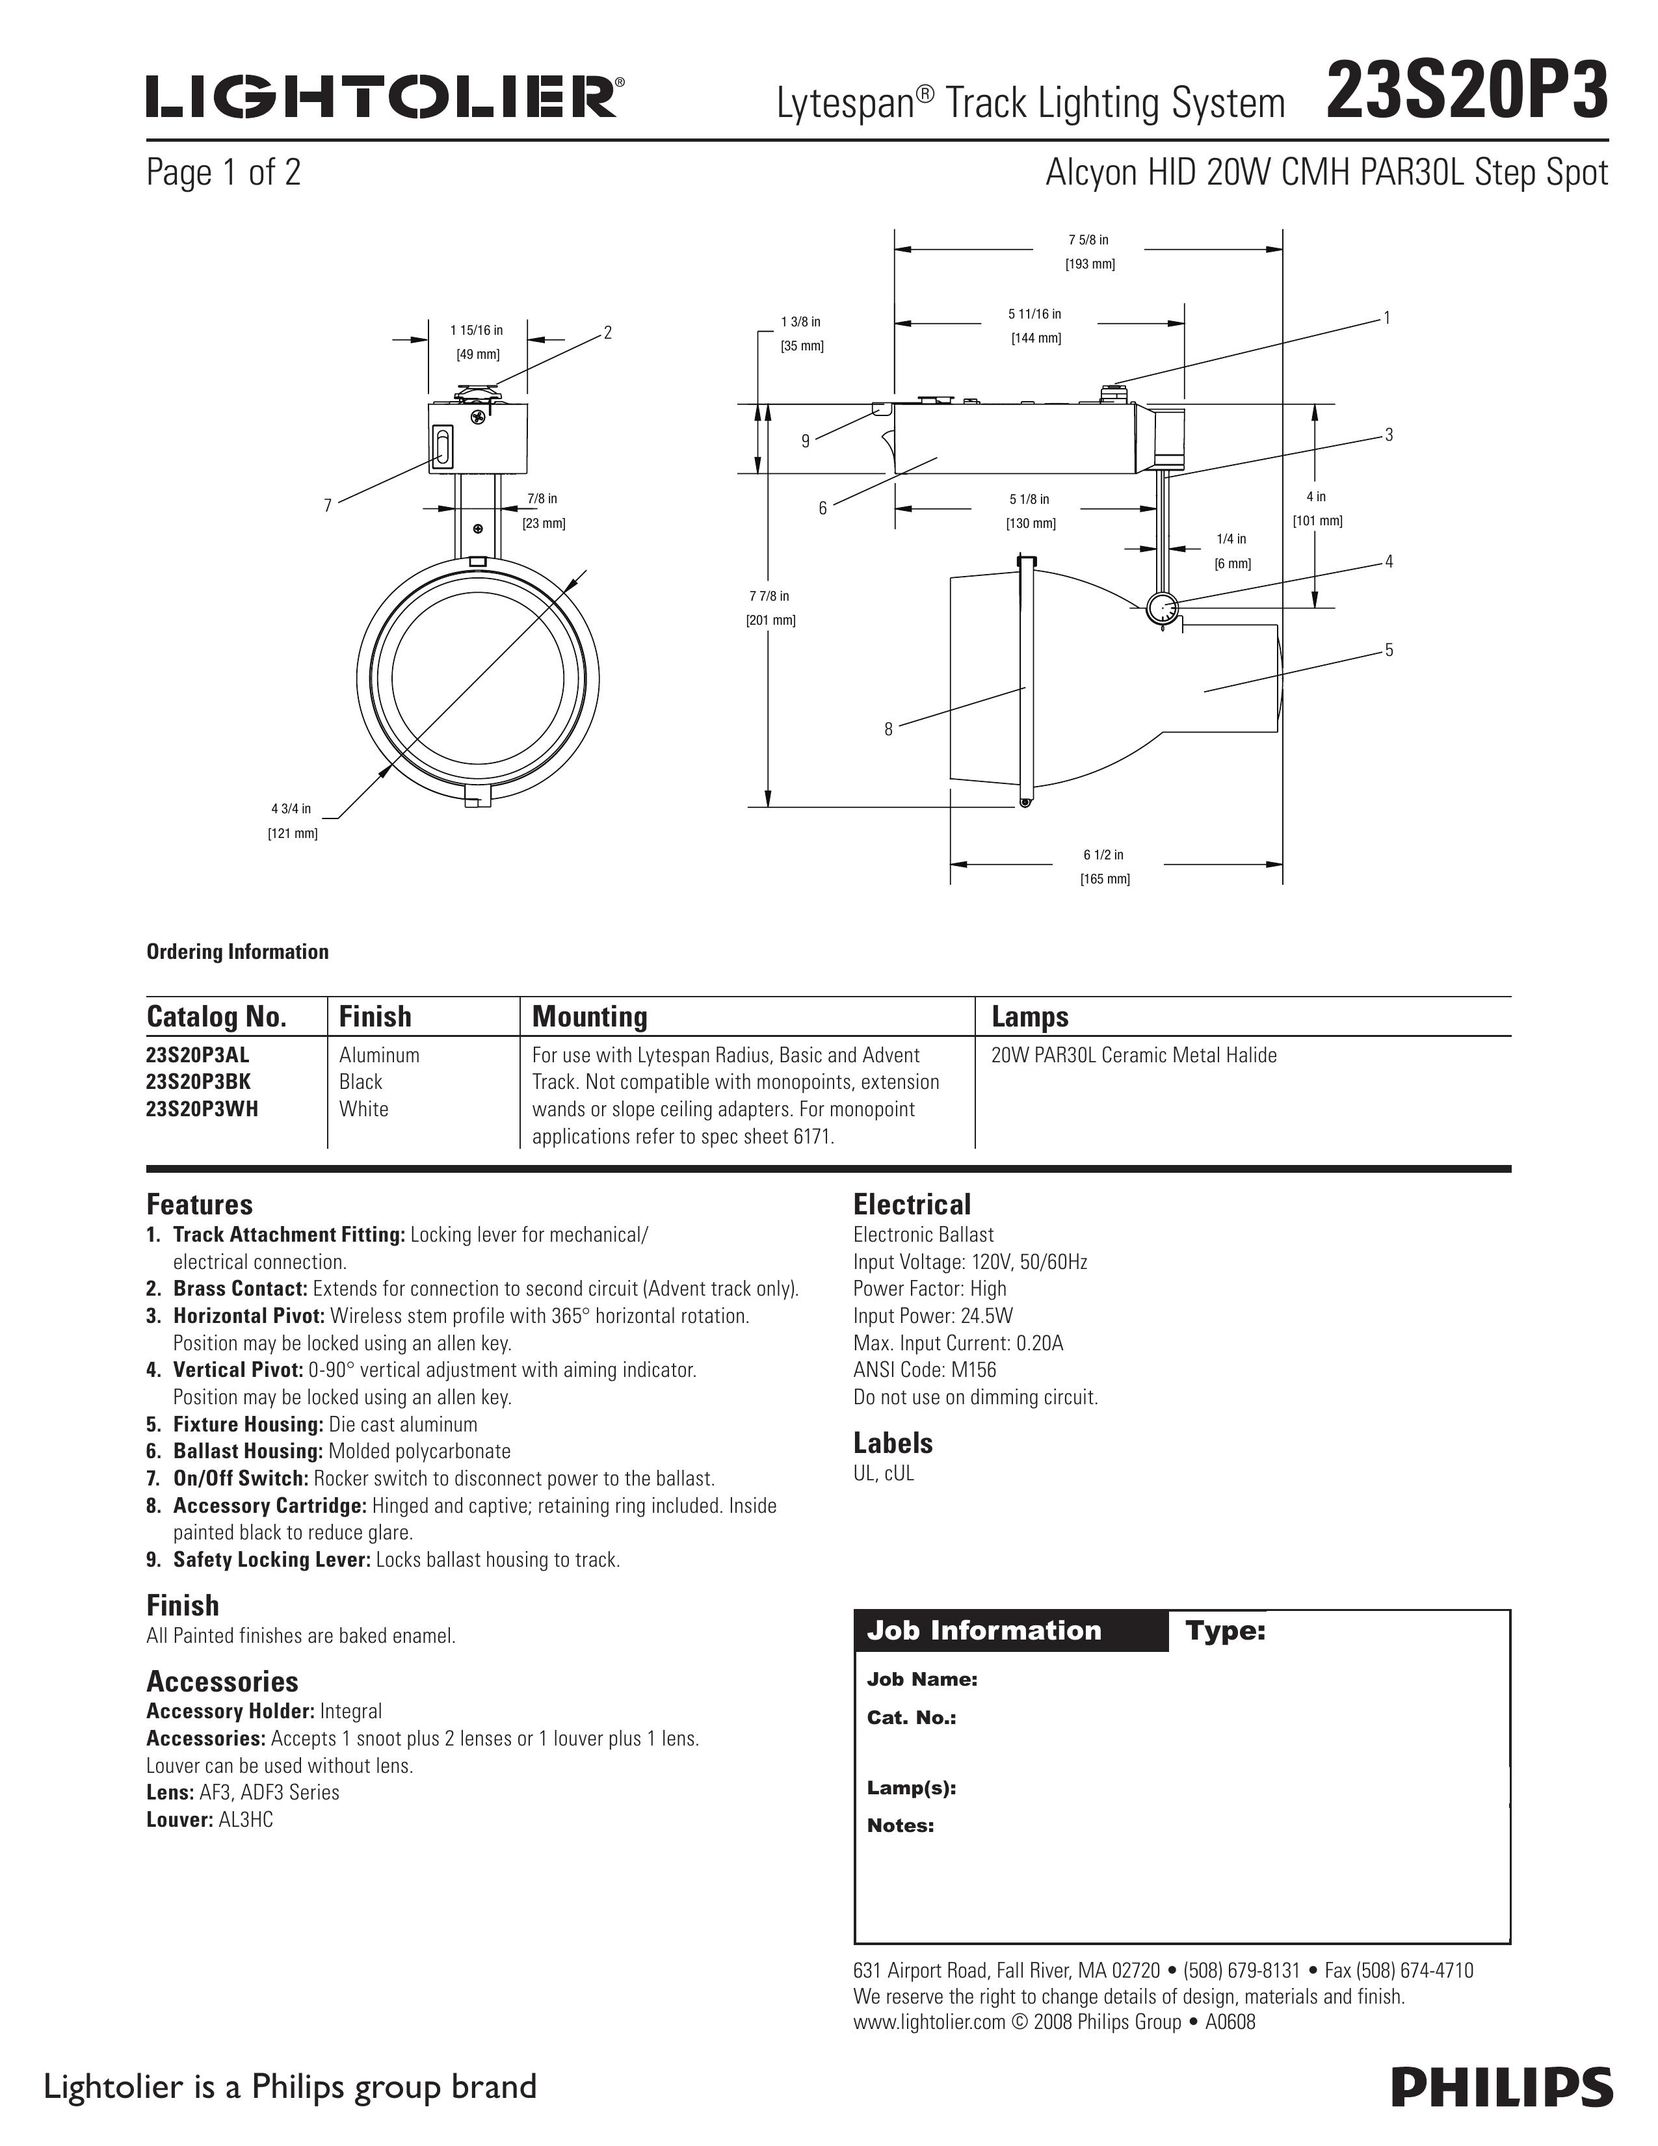 Lightolier 23S20P3 Work Light User Manual